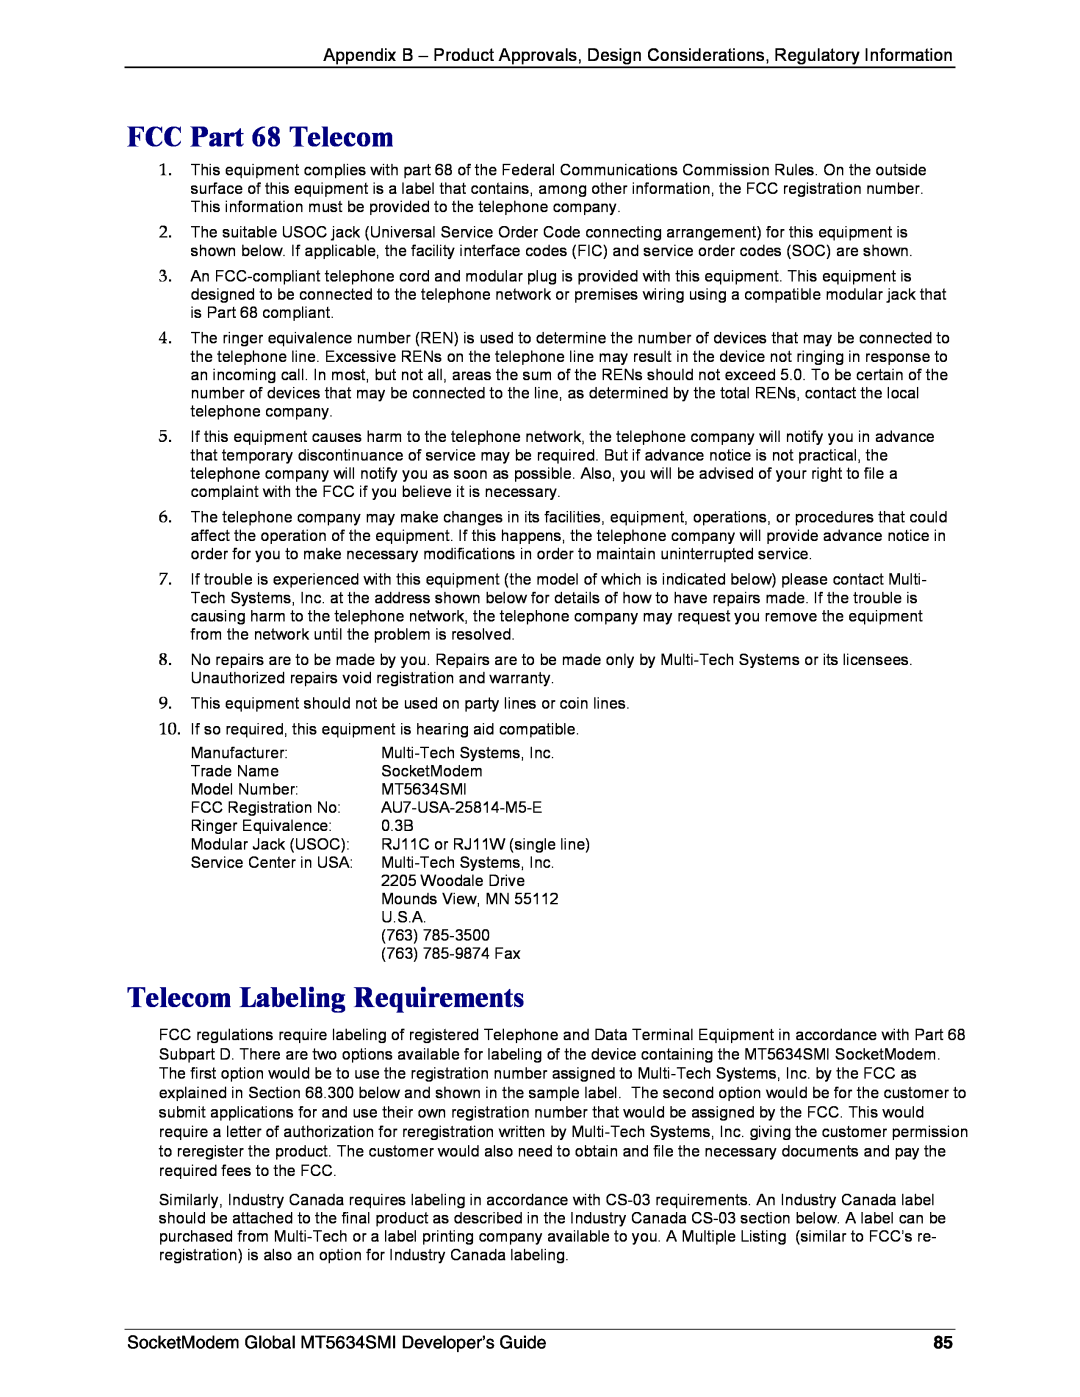 Technics MT5634SMI-34 FCC Part 68 Telecom, Telecom Labeling Requirements, SocketModem Global MT5634SMI Developer’s Guide 